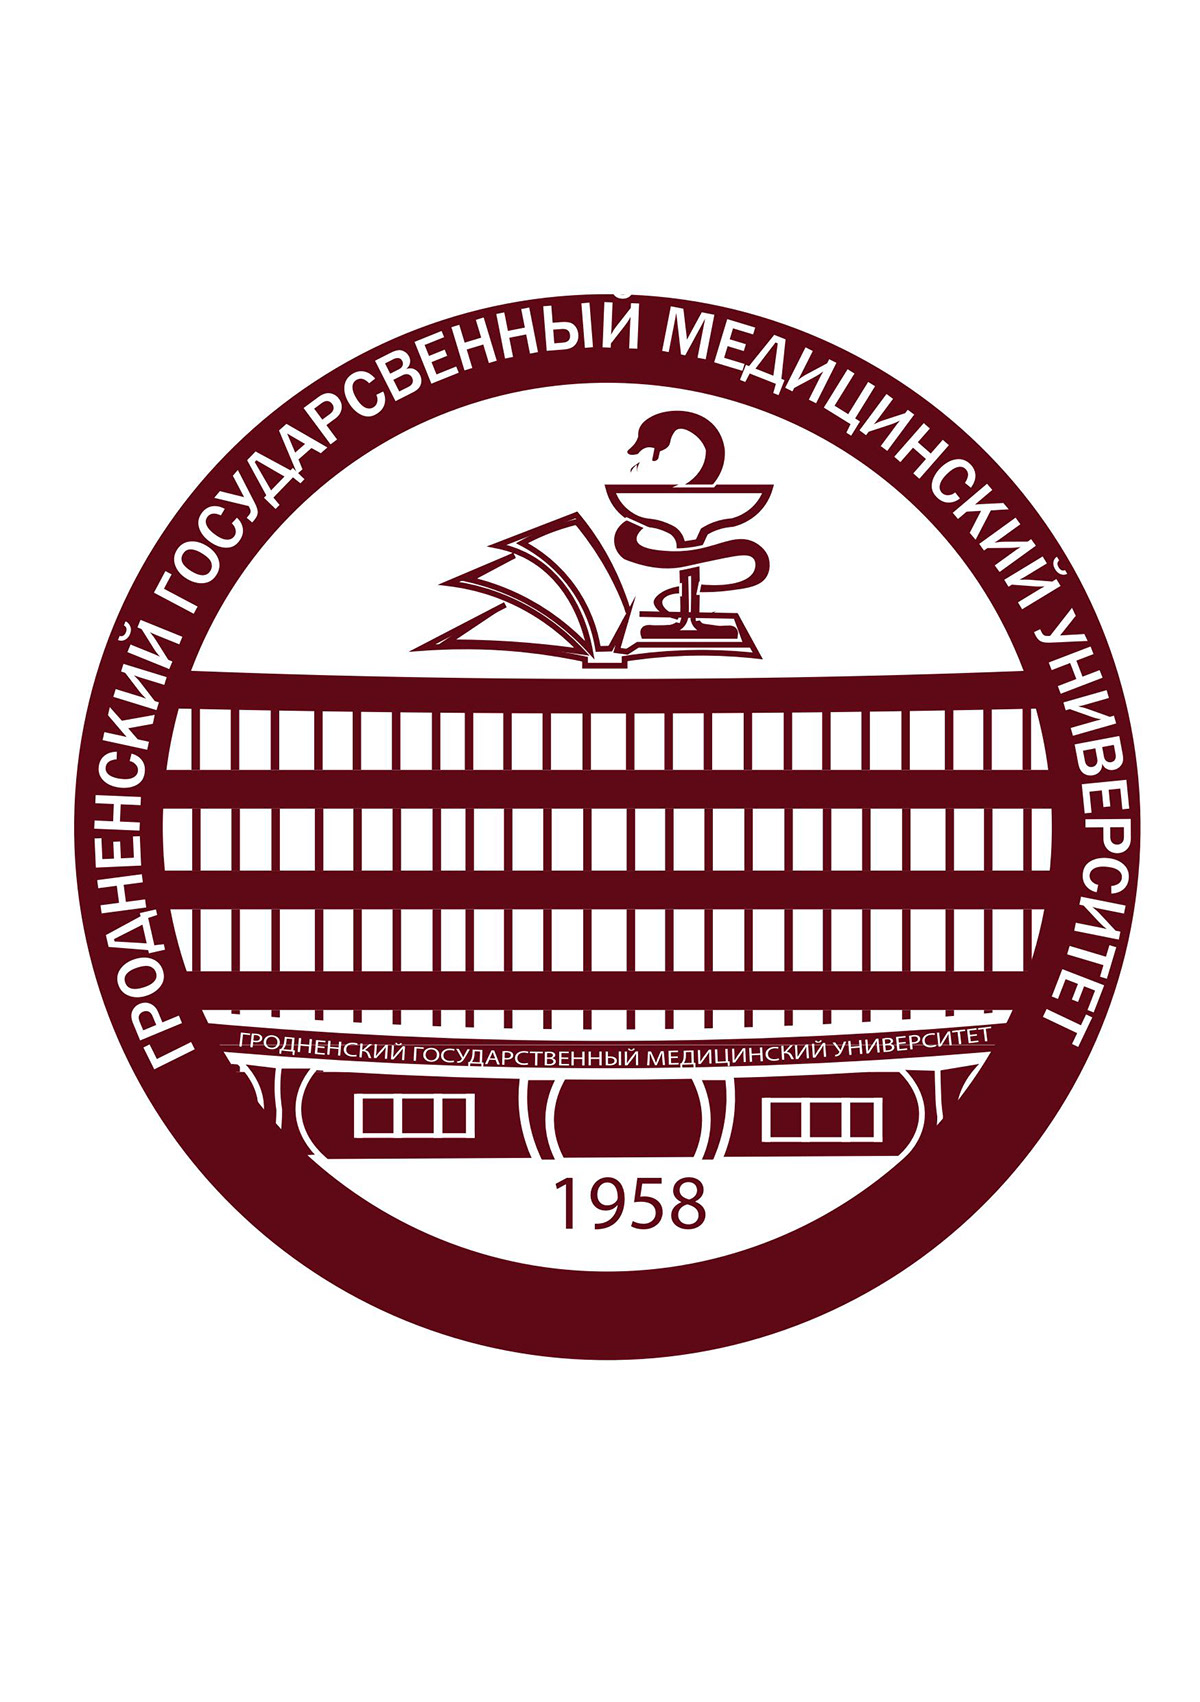 эмблема emblem логотип logo Graphic Designer design Logo Design университет University редизайн логотипа